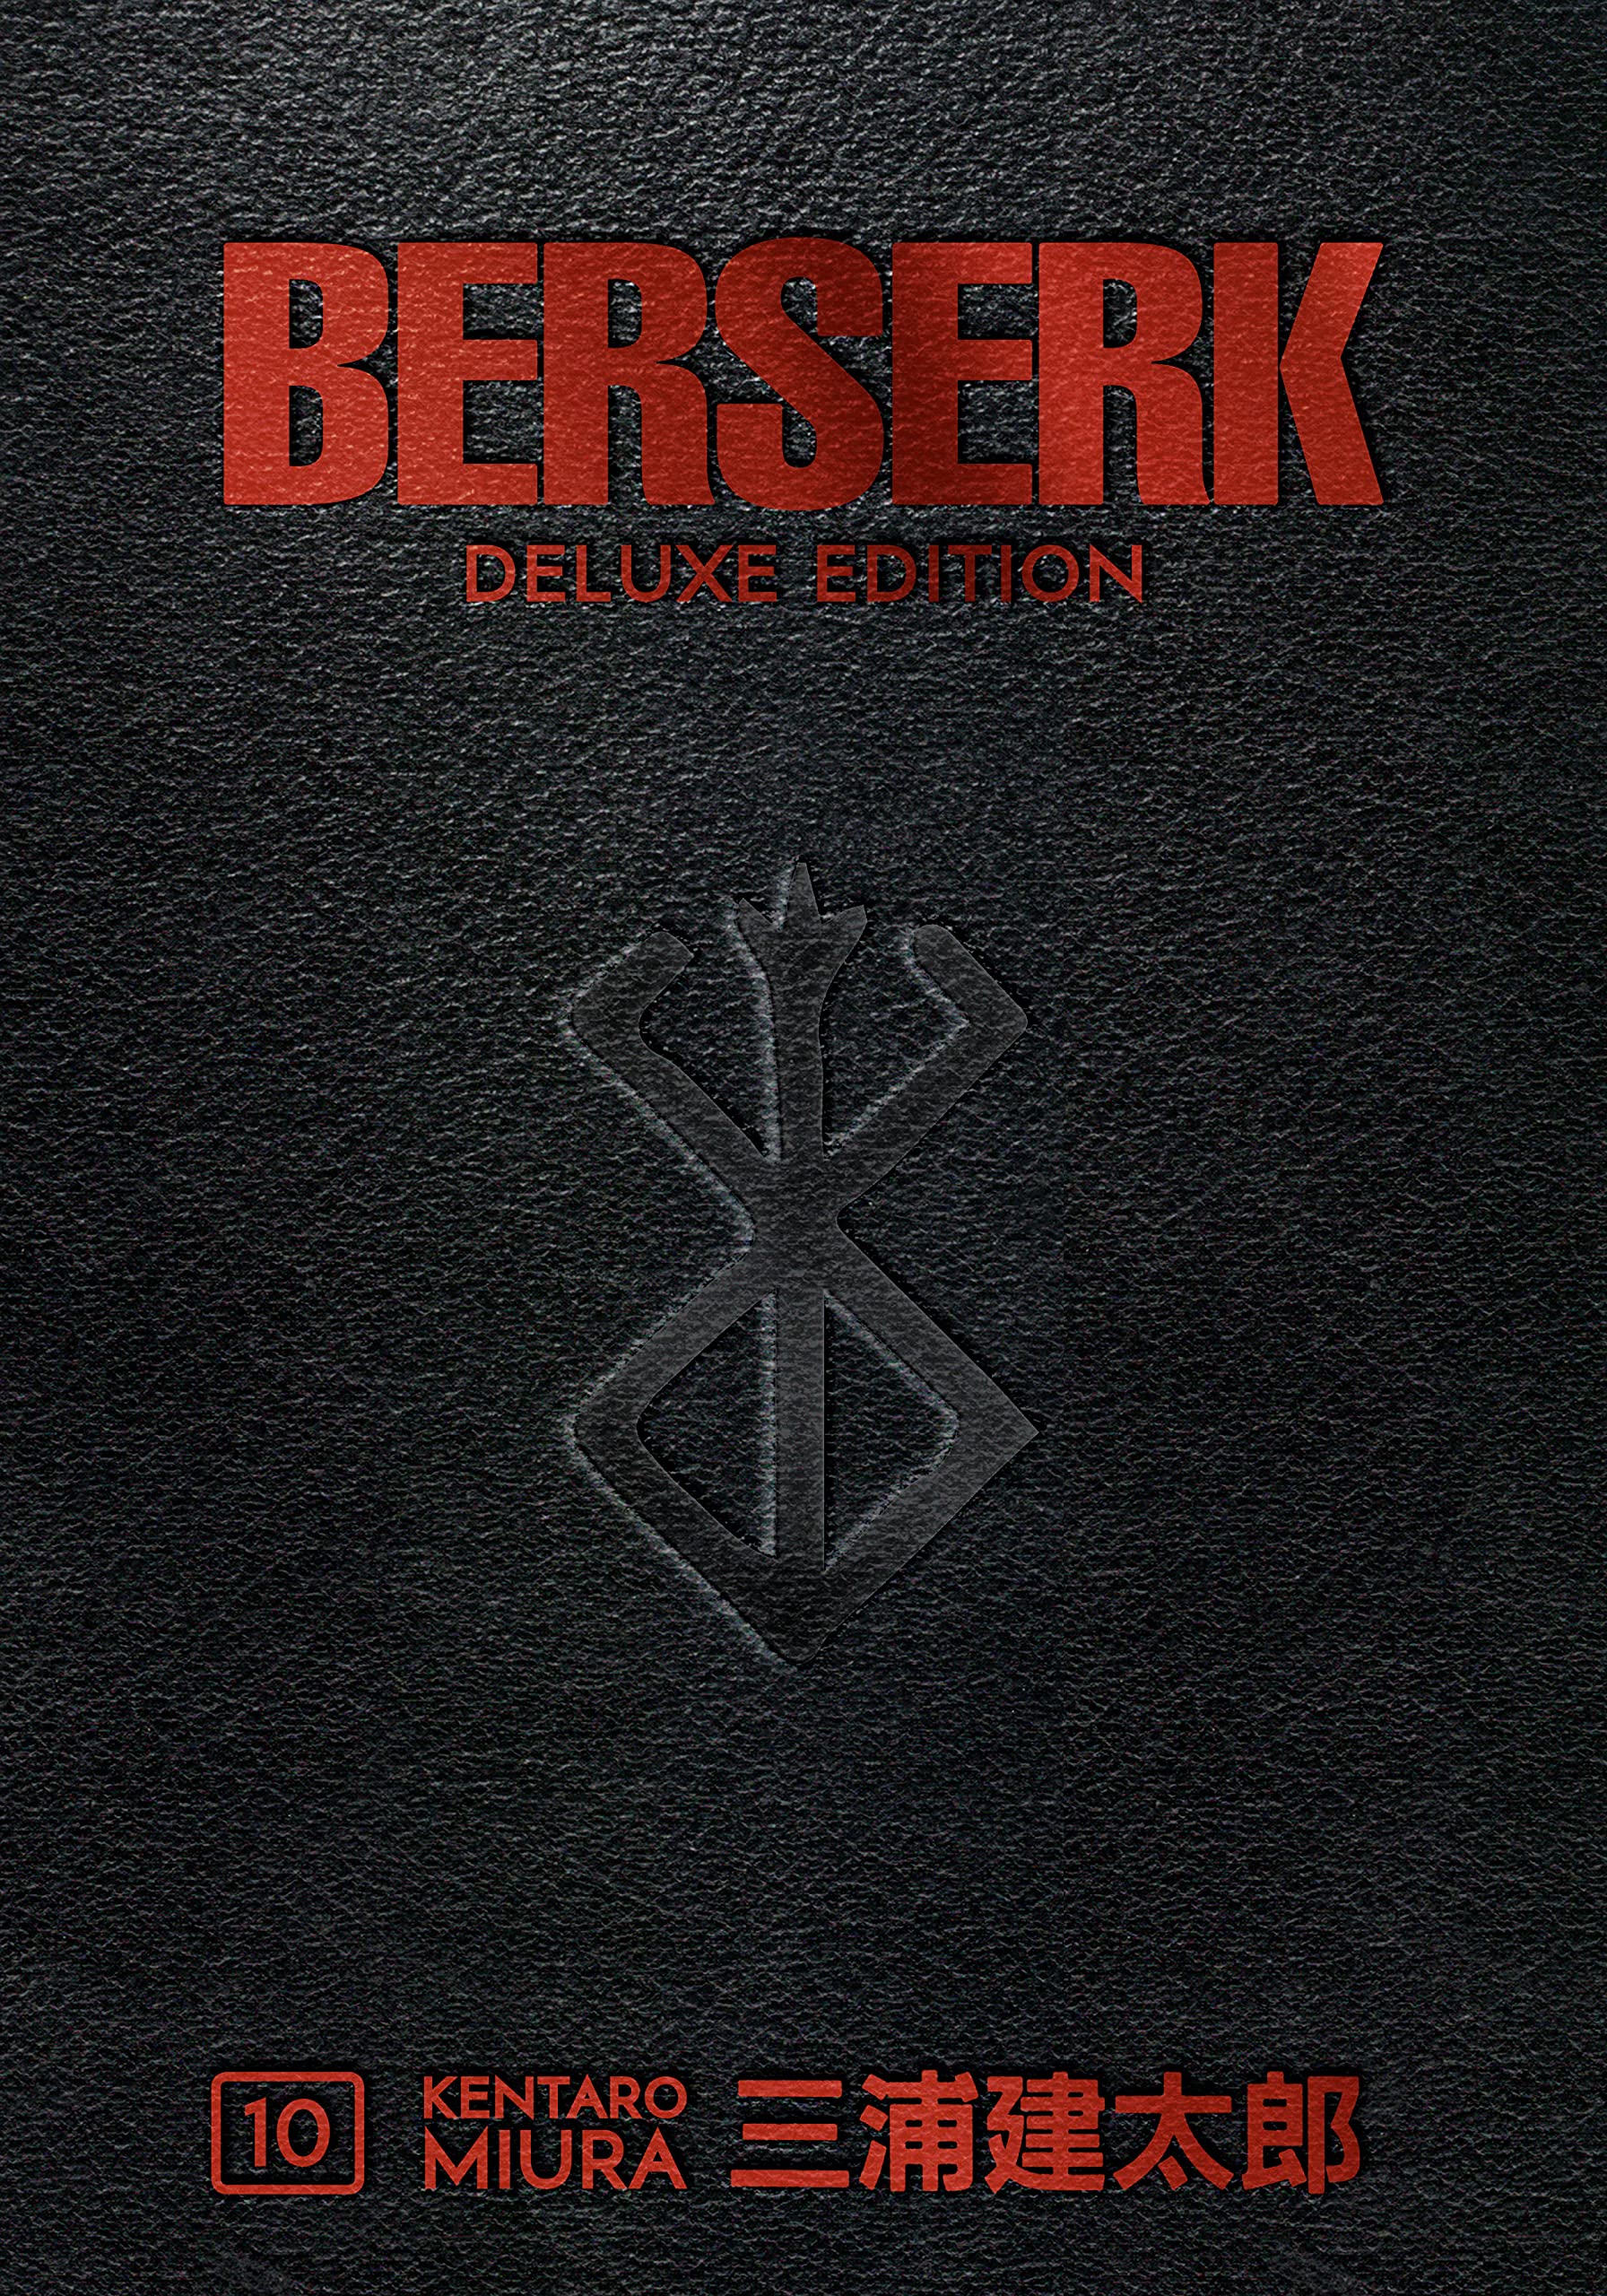 Berserk Deluxe Edition Vol. 10